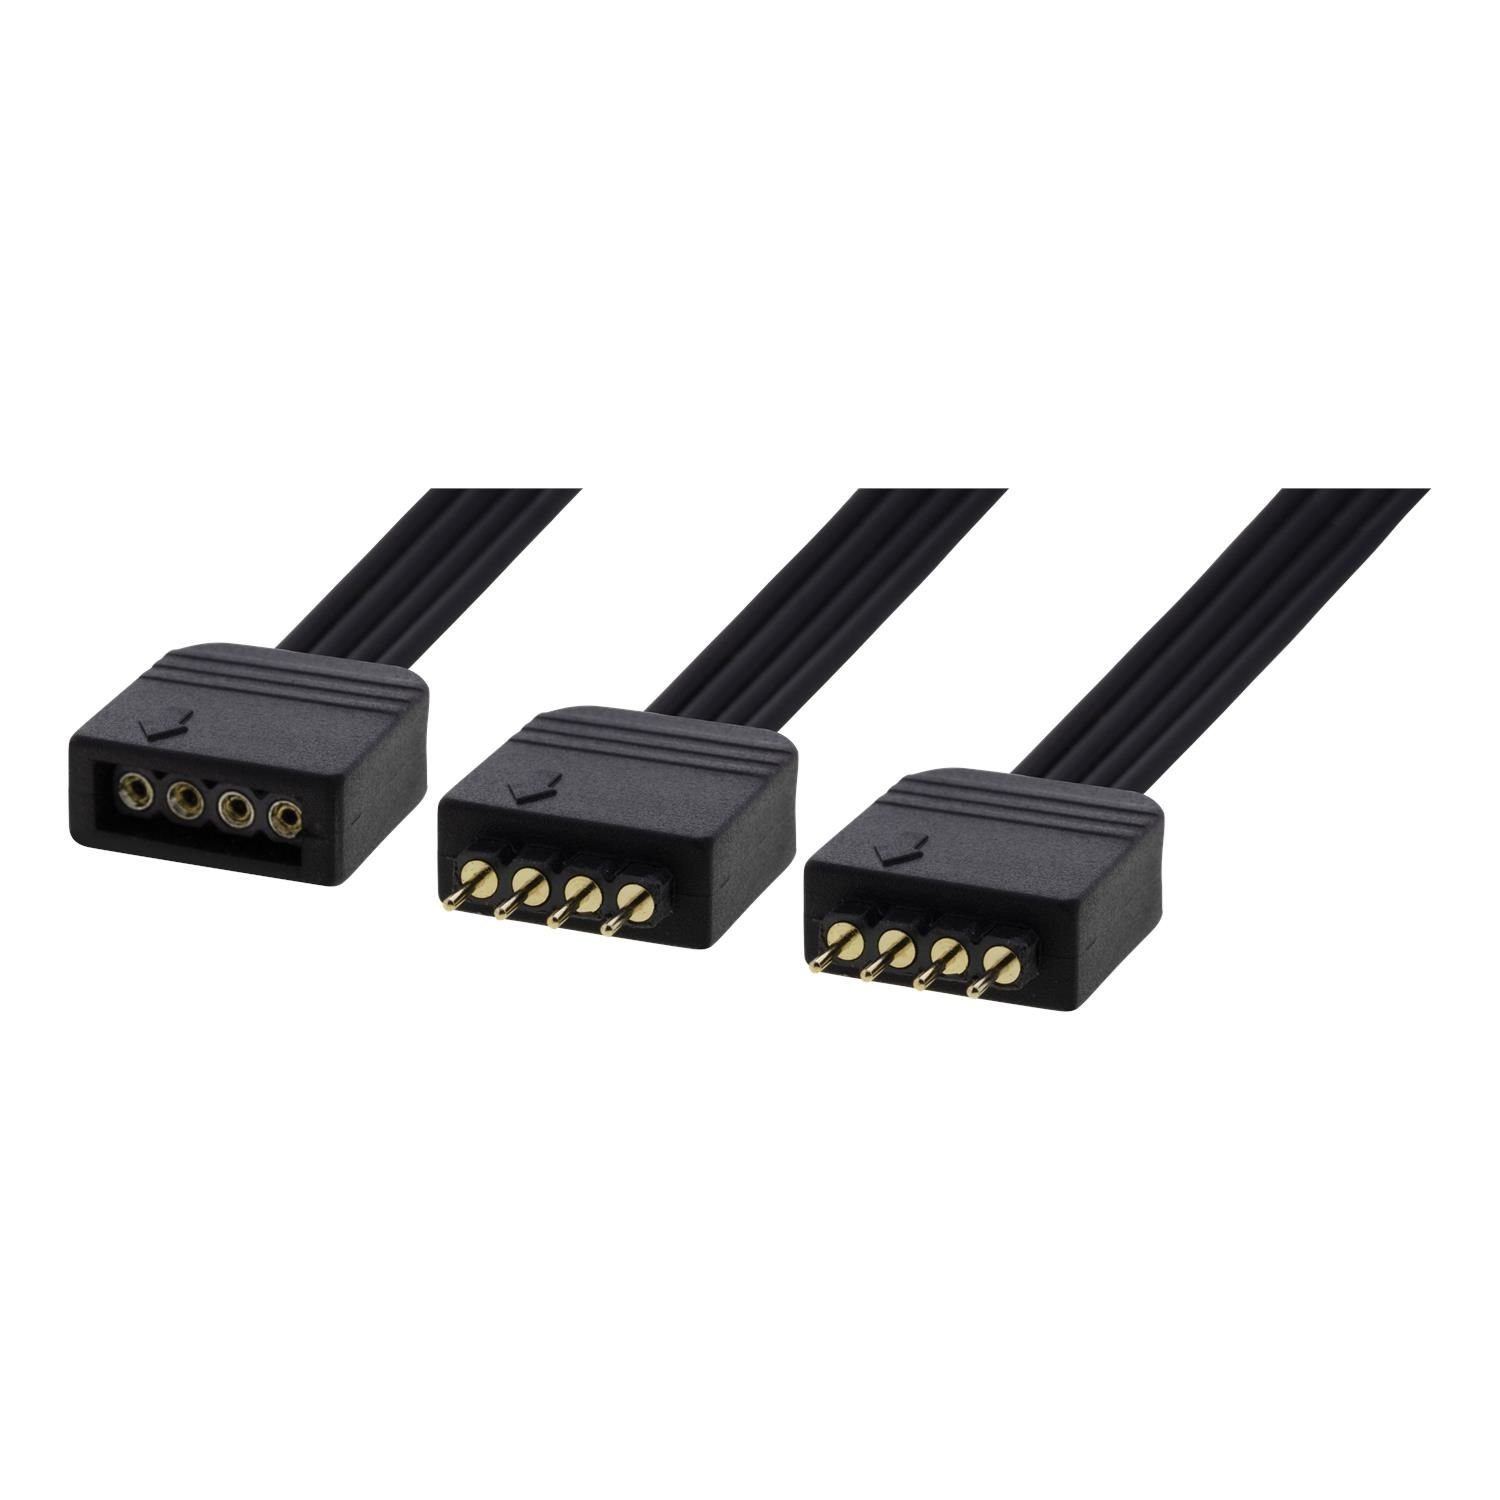 DELTACO LED Strip Y-Kabel RGB 15 cm (4-polig, Asus, Msi, Gigabyte) Netzkabel, inkl. 5 Jahre Herstellergarantie